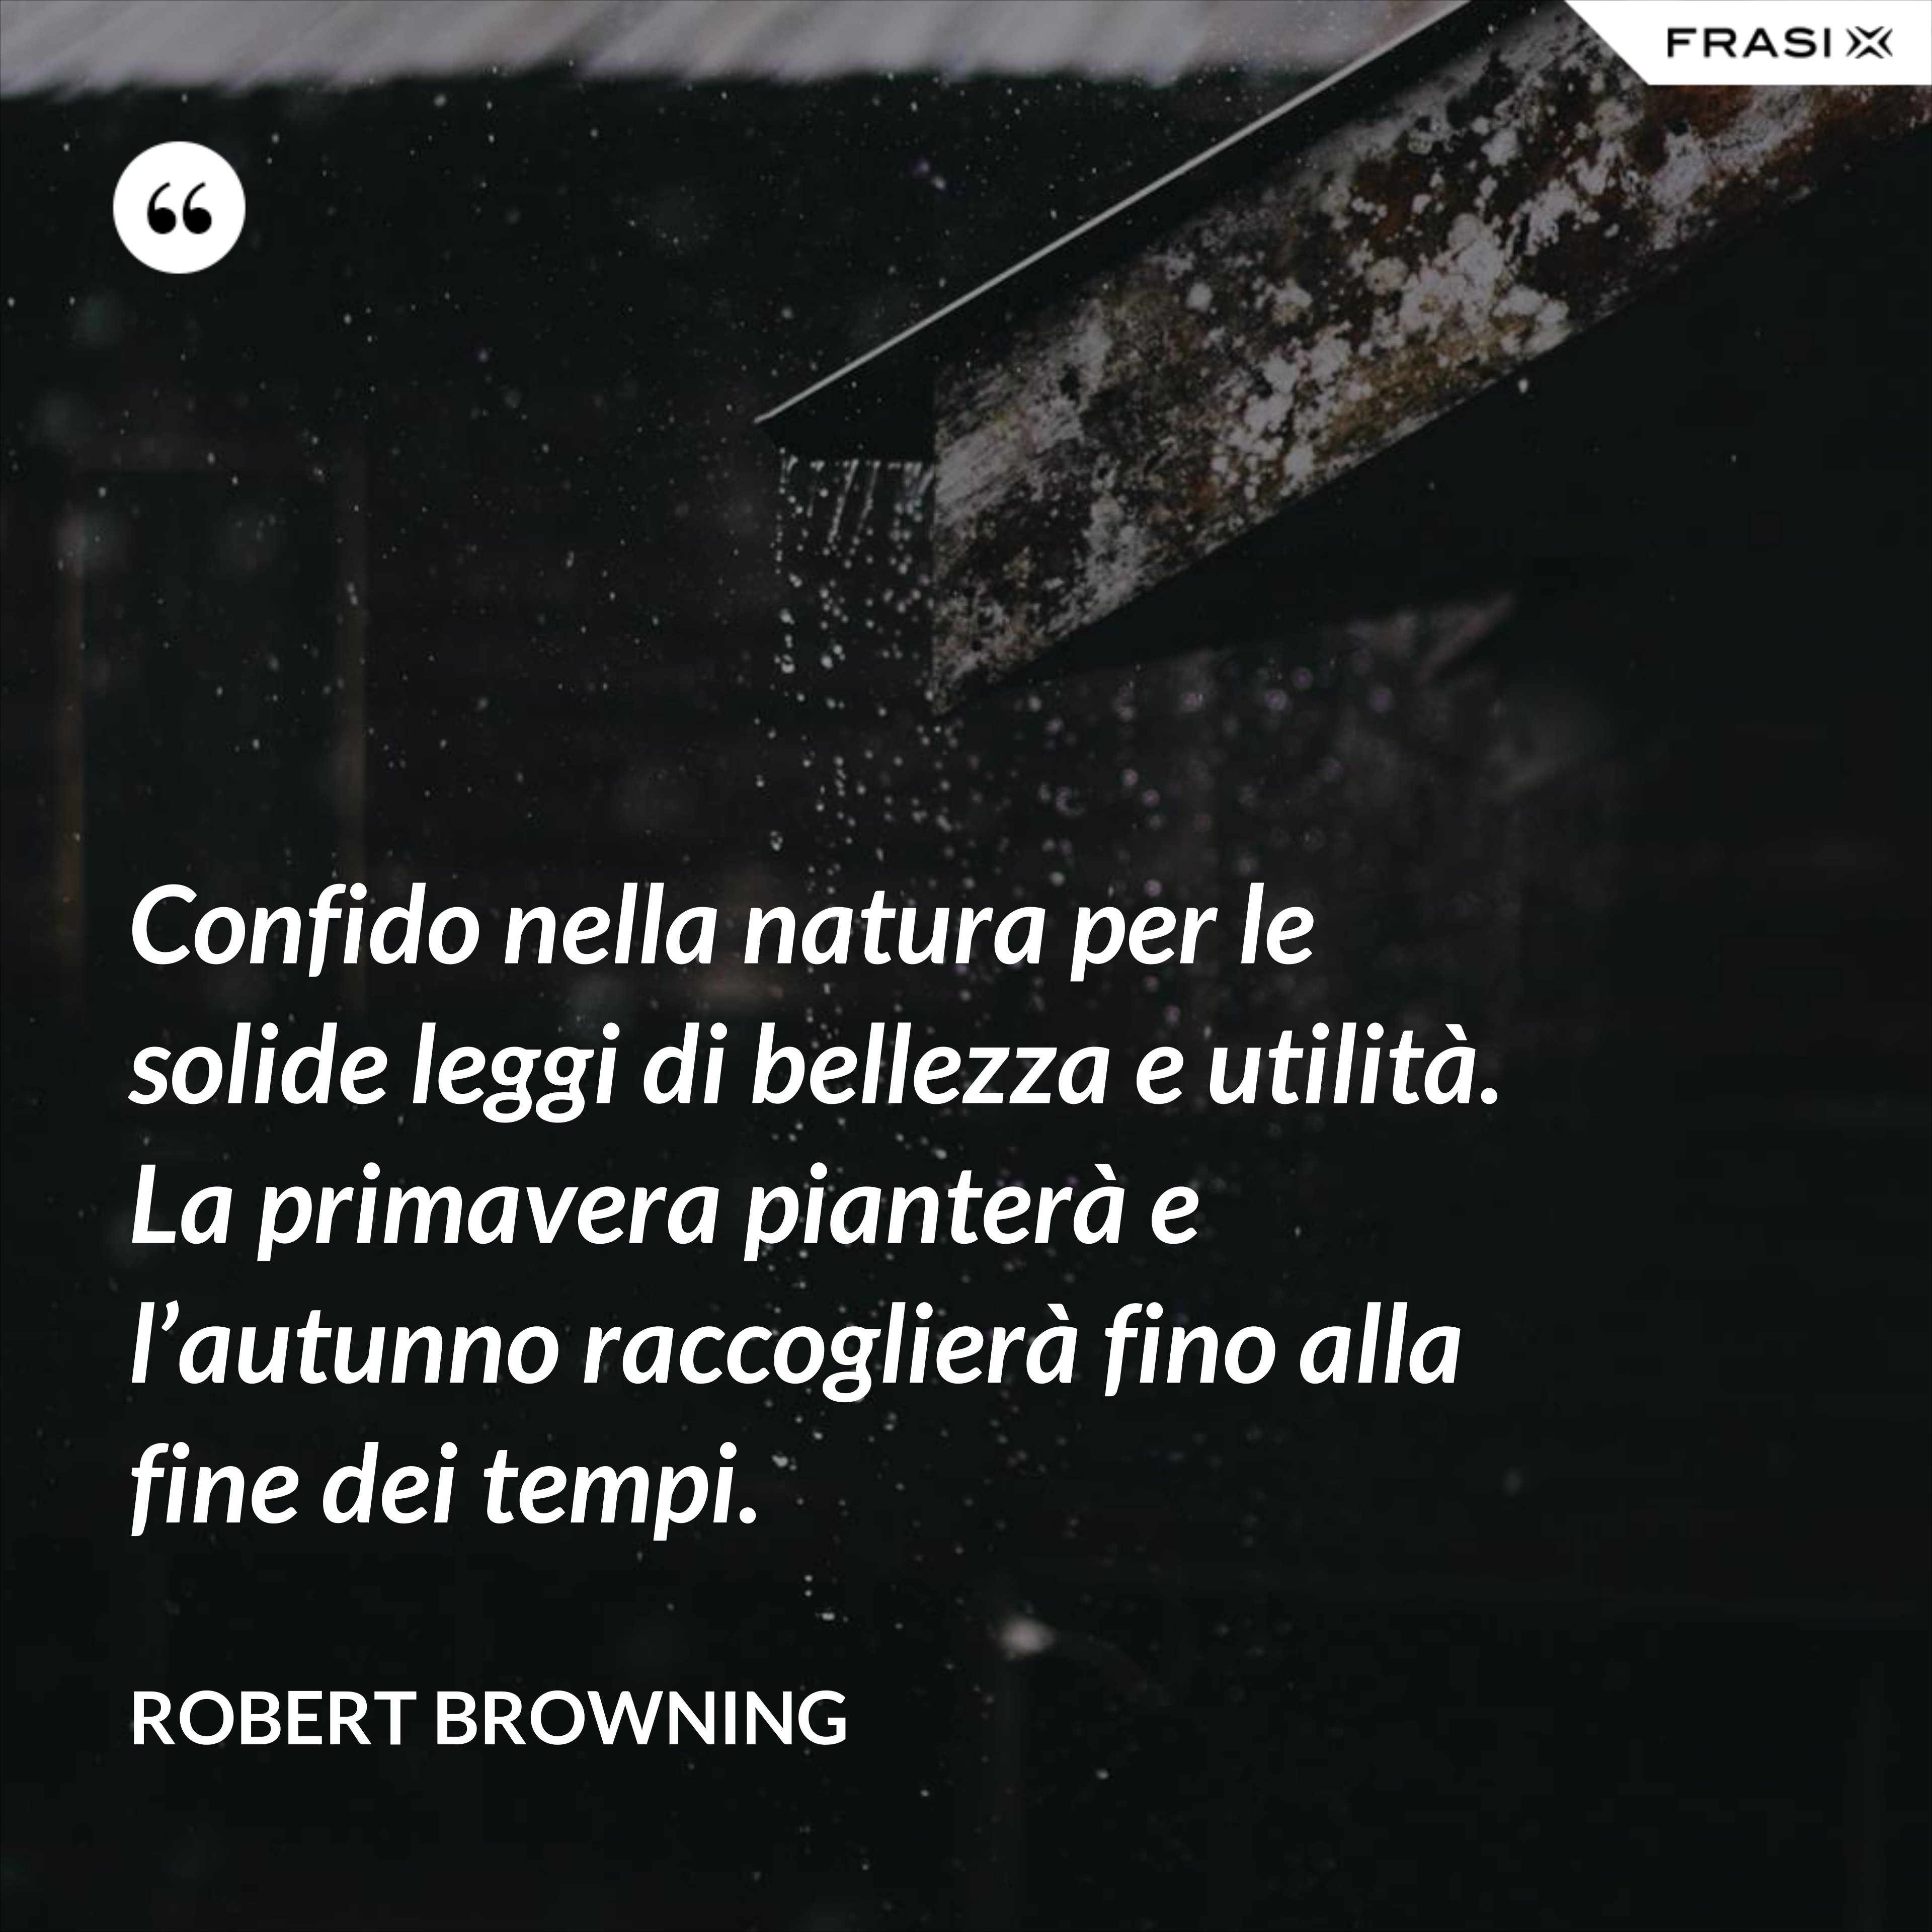 Confido nella natura per le solide leggi di bellezza e utilità. La primavera pianterà e l’autunno raccoglierà fino alla fine dei tempi. - Robert Browning